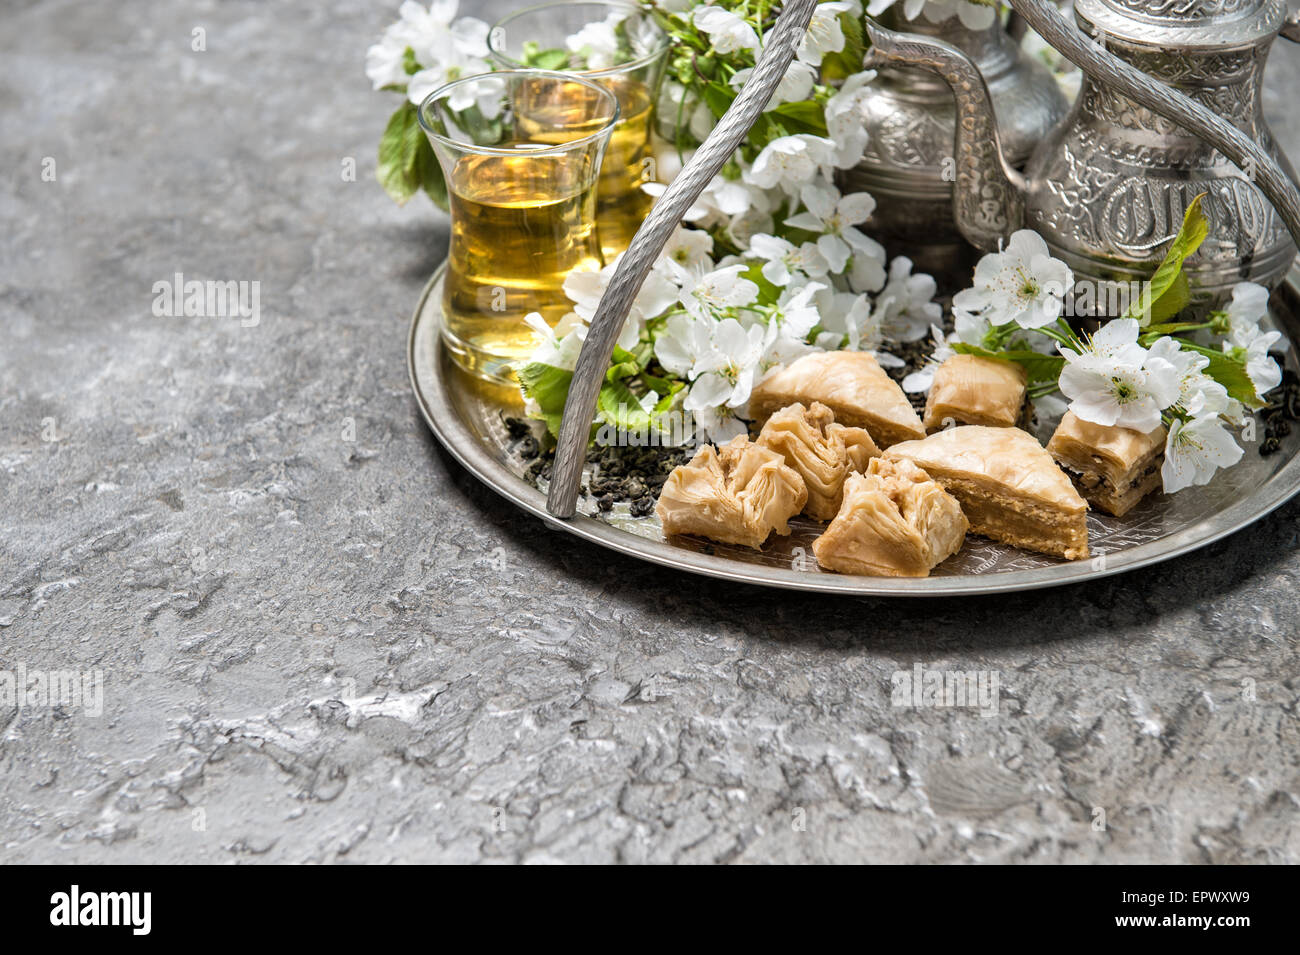 RAYA Glass Tea Maker & Samovar, White